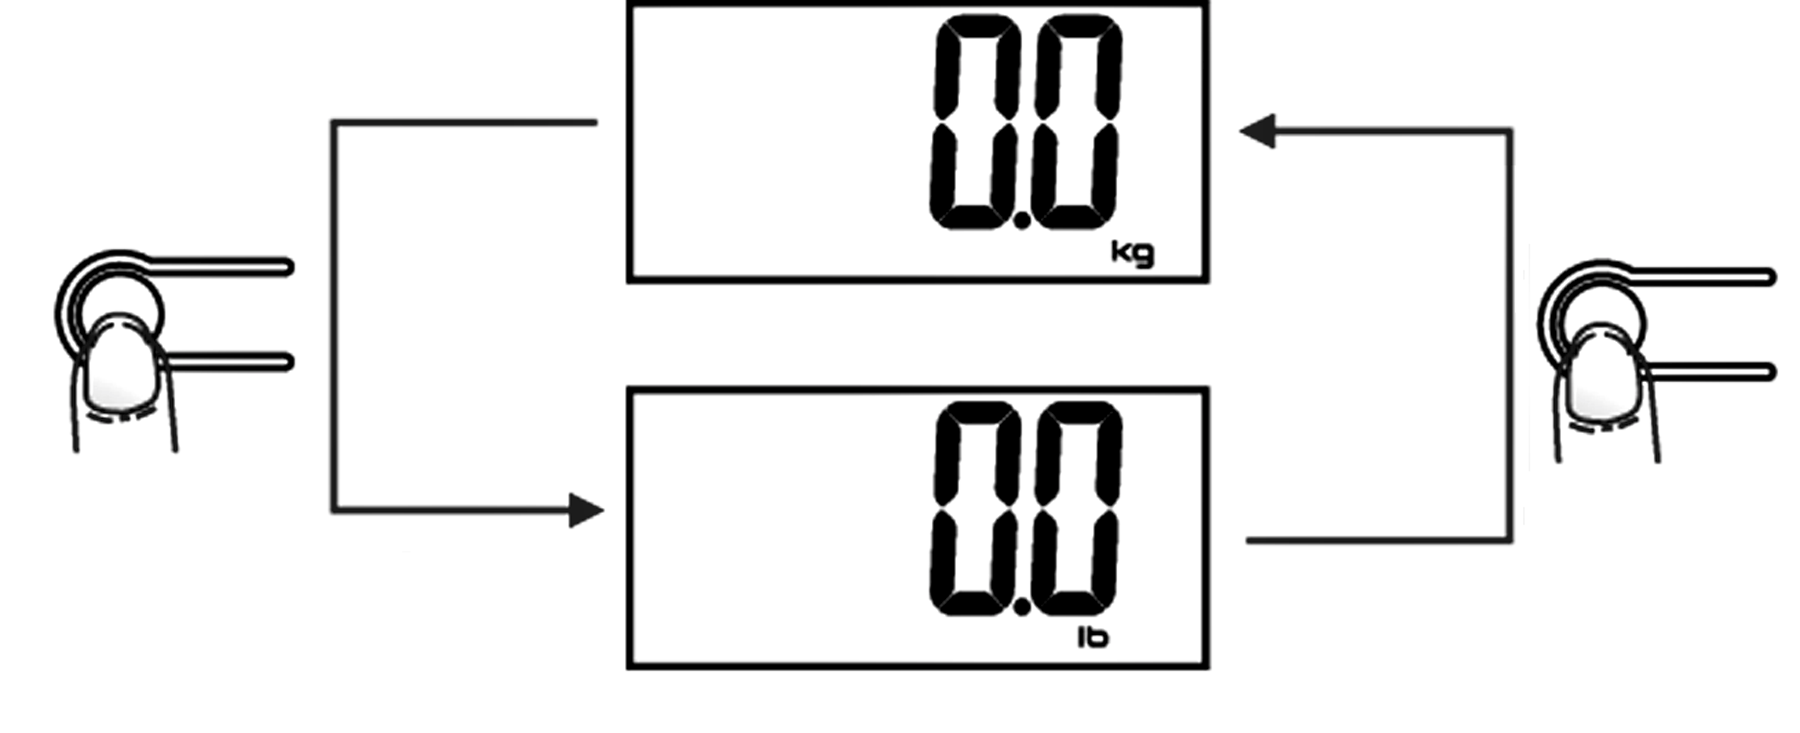 Vid inställning av kg är den förinställda längden i cm. VÄGNING NORMAL VÄGNING För normal vägning behövs inga inställningar.